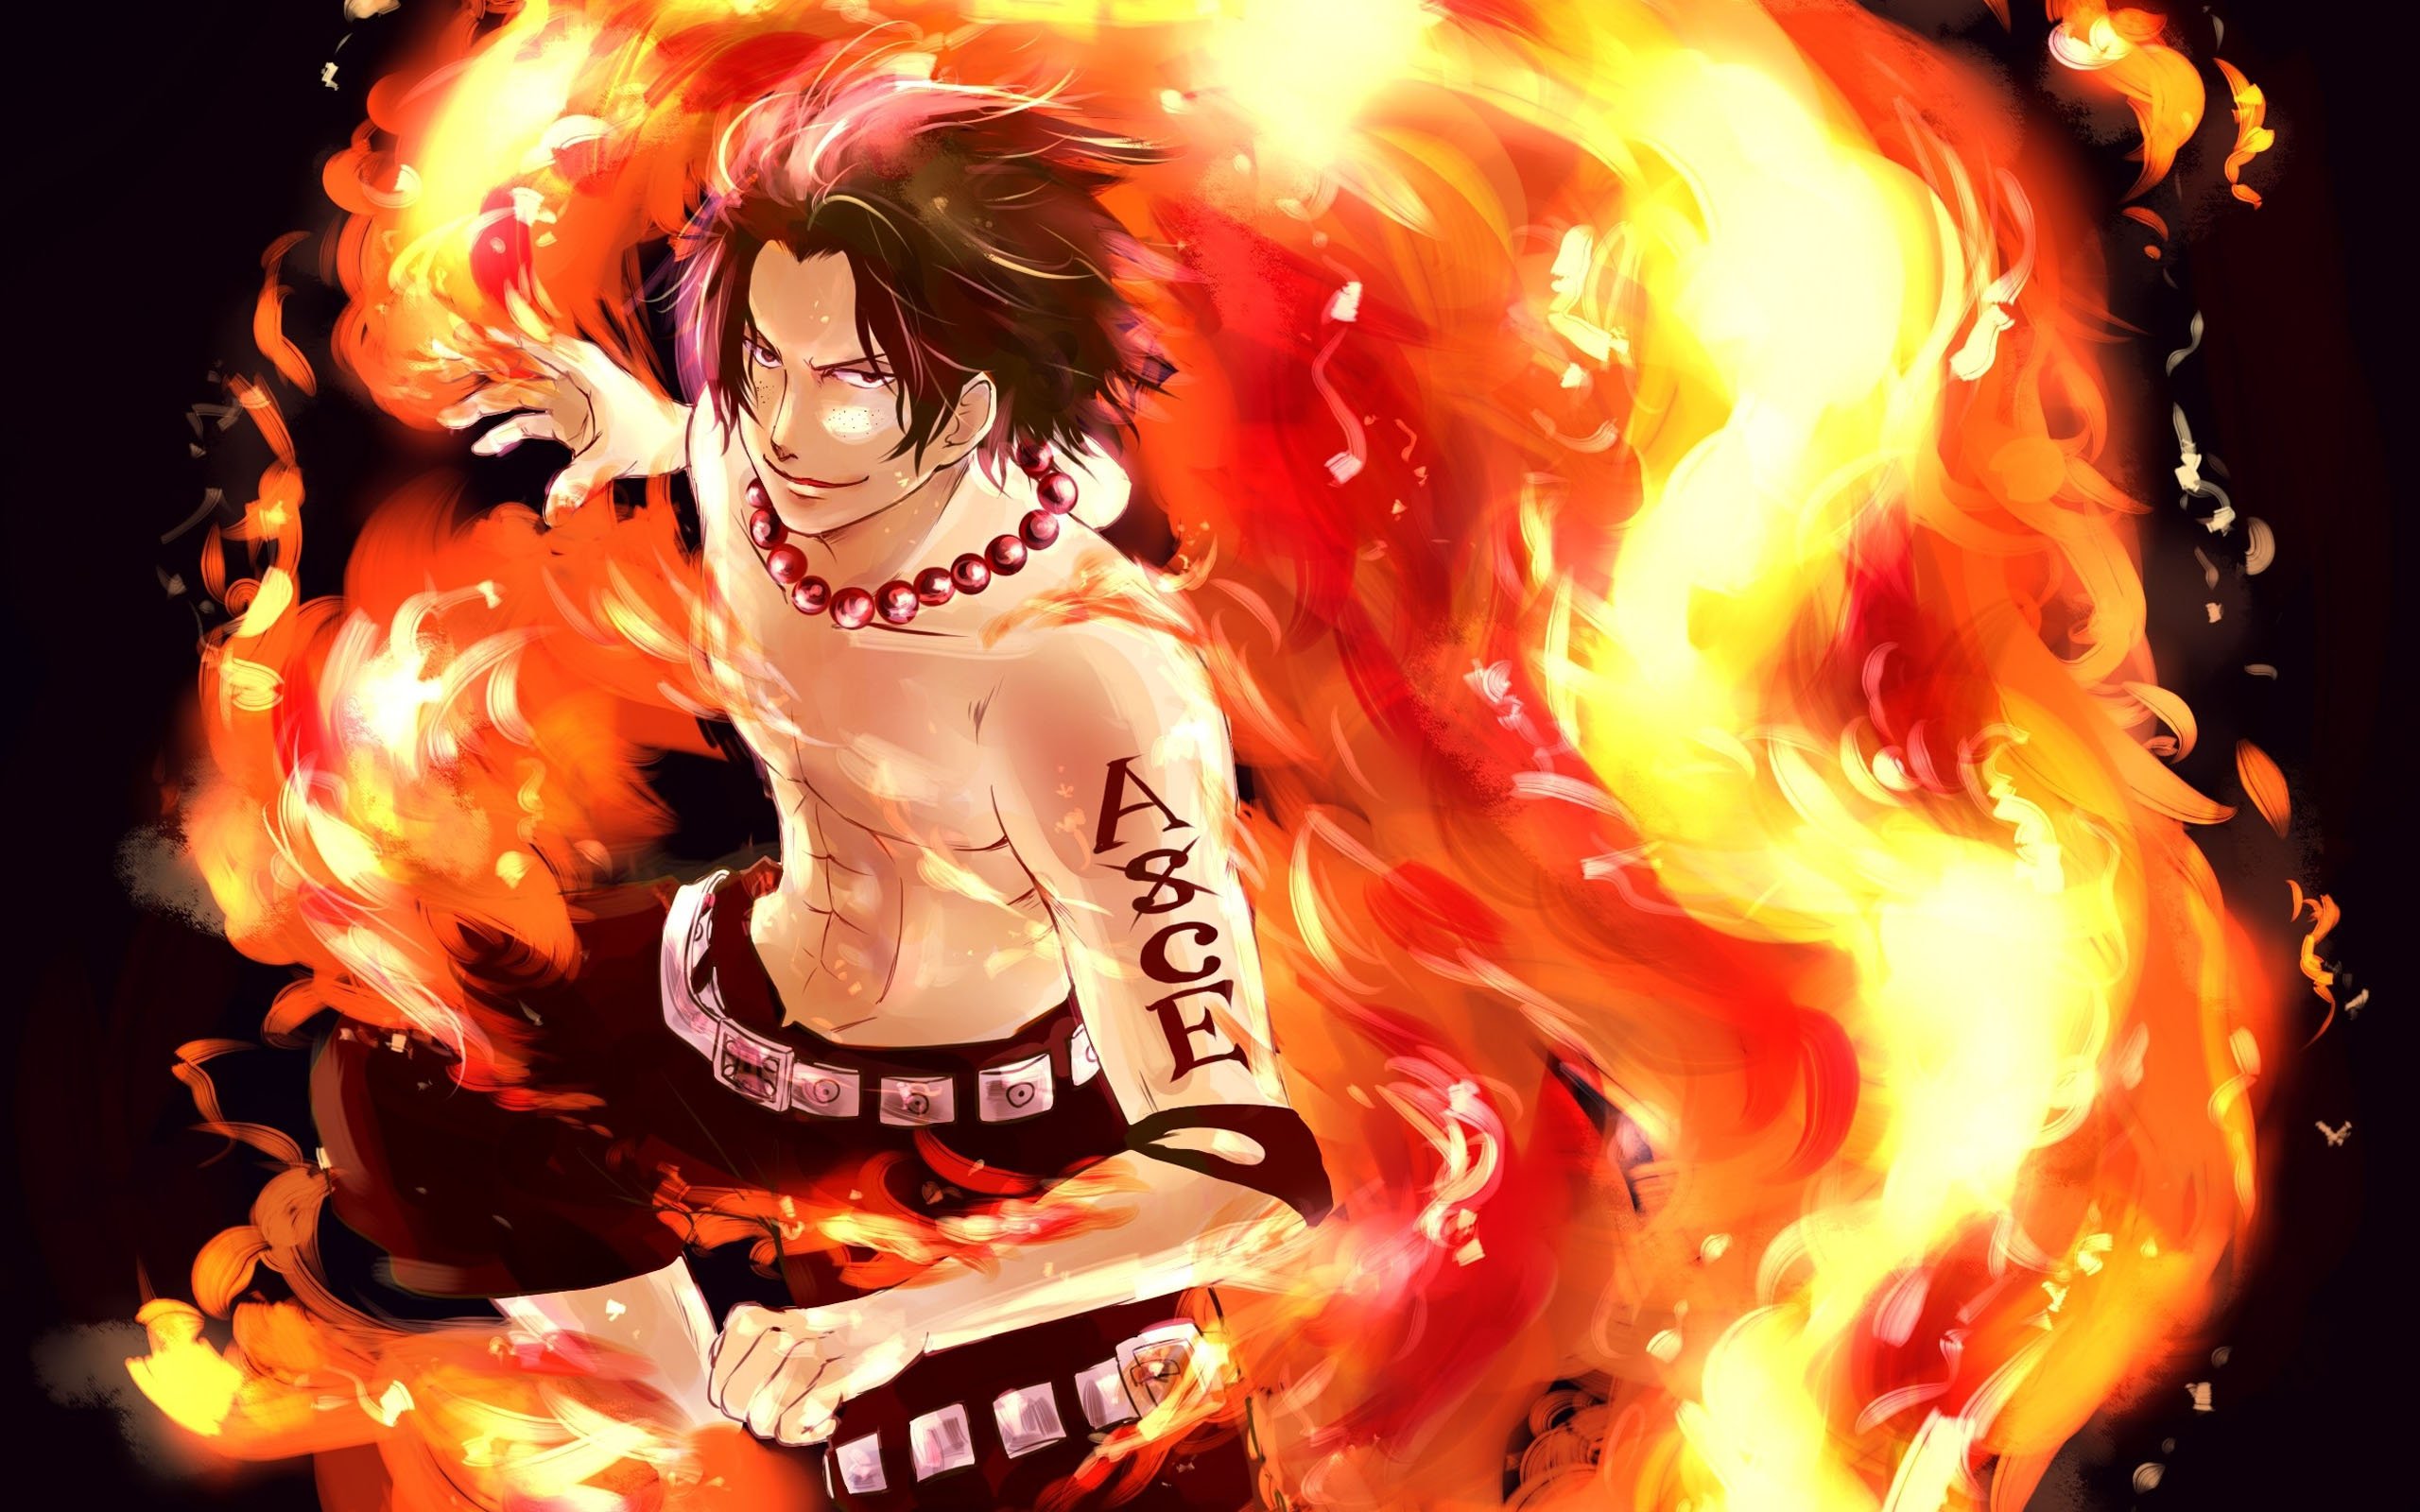 Portages D. Ace là một trong những nhân vật được yêu thích nhất trong bộ manga One Piece. Hình ảnh về anh chàng tay đua đầy cá tính này sẽ làm cho chiếc điện thoại của bạn trở nên đặc biệt và thu hút hơn. Hãy tải ngay để thể hiện niềm yêu thích với bộ truyện tranh máu lửa này.